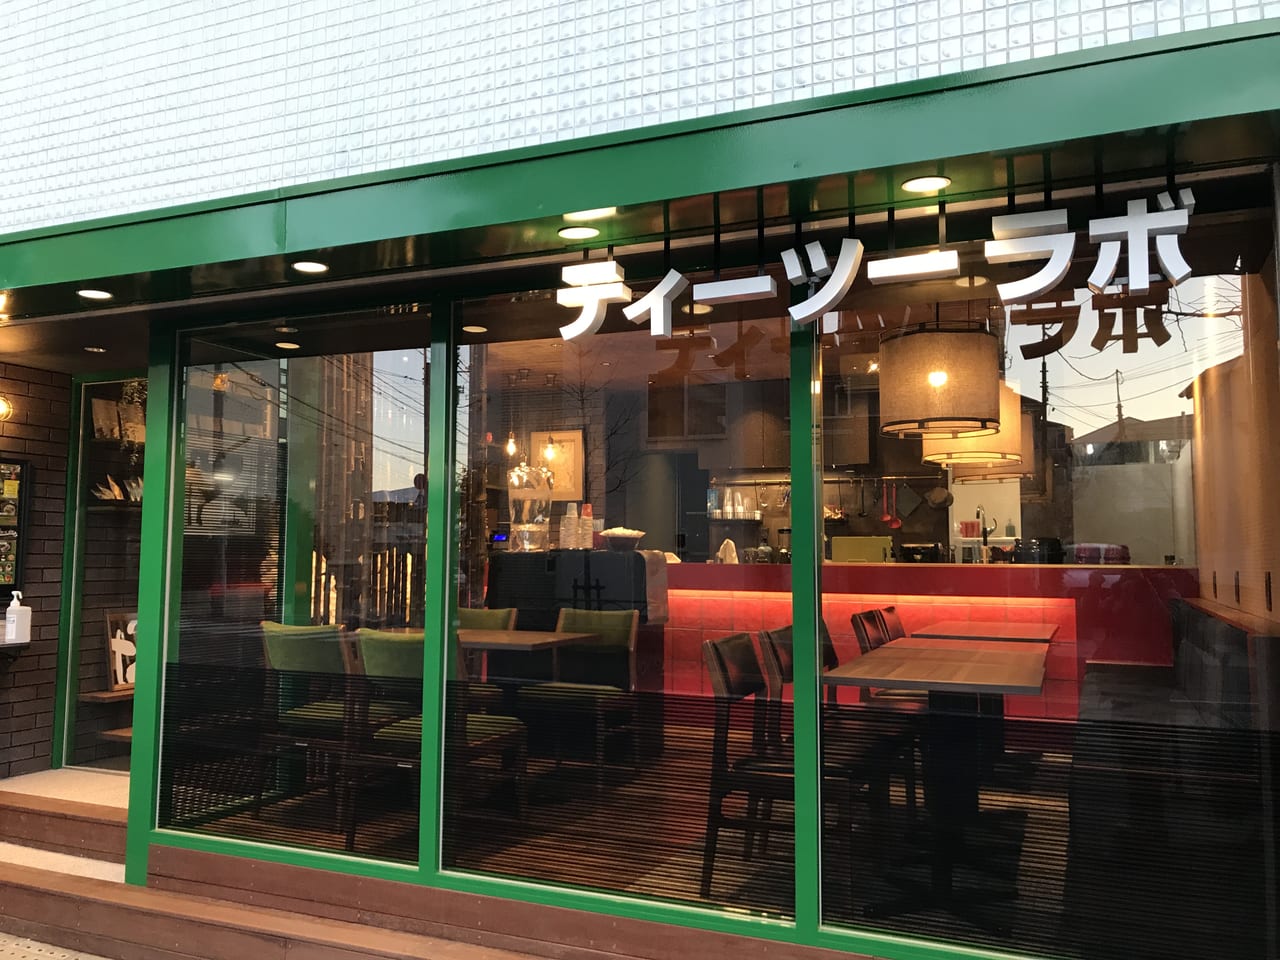 世田谷区等々力7丁目に岡山県小田郡矢掛町のお団子カフェがプレオープンしました。